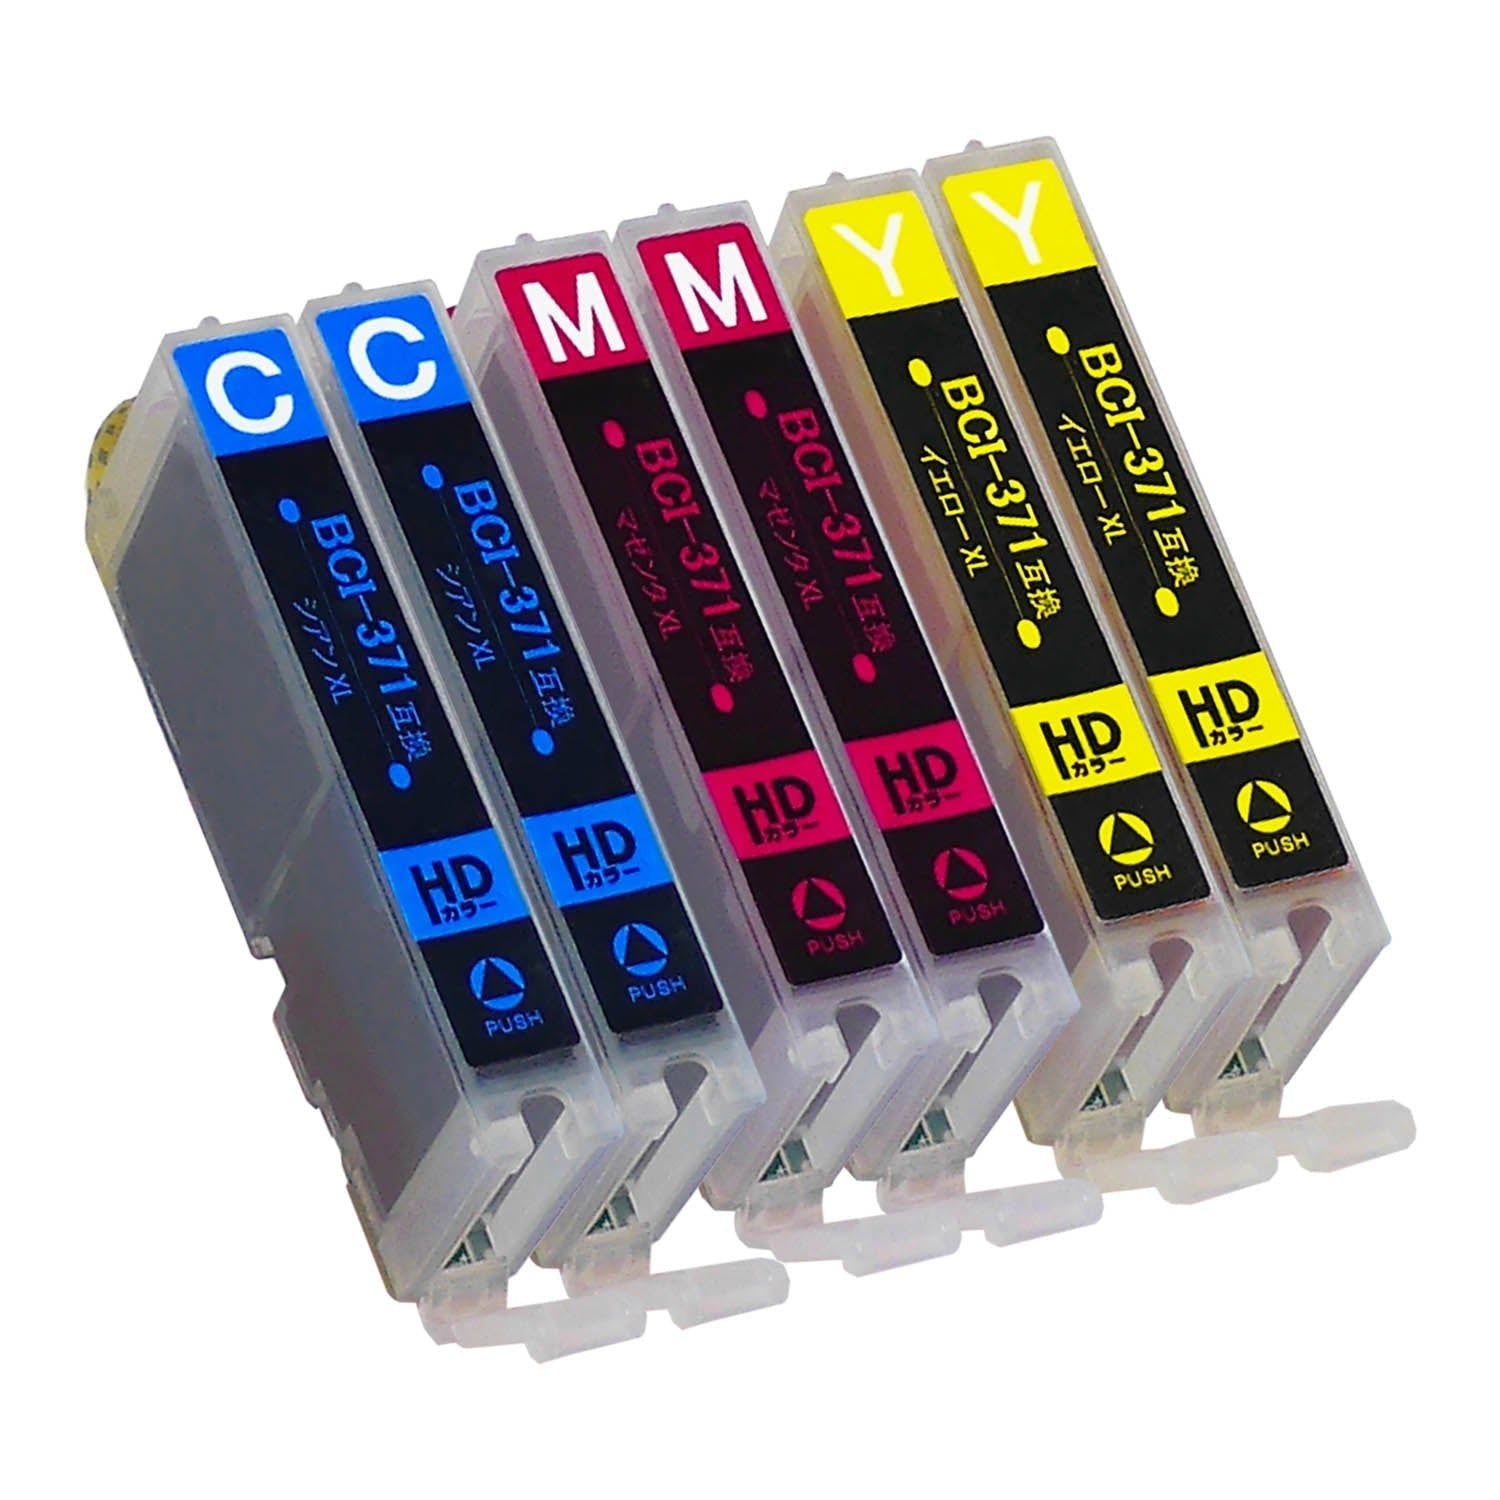 キヤノン用 BCI-371/370 互換インク カラー3色 大容量